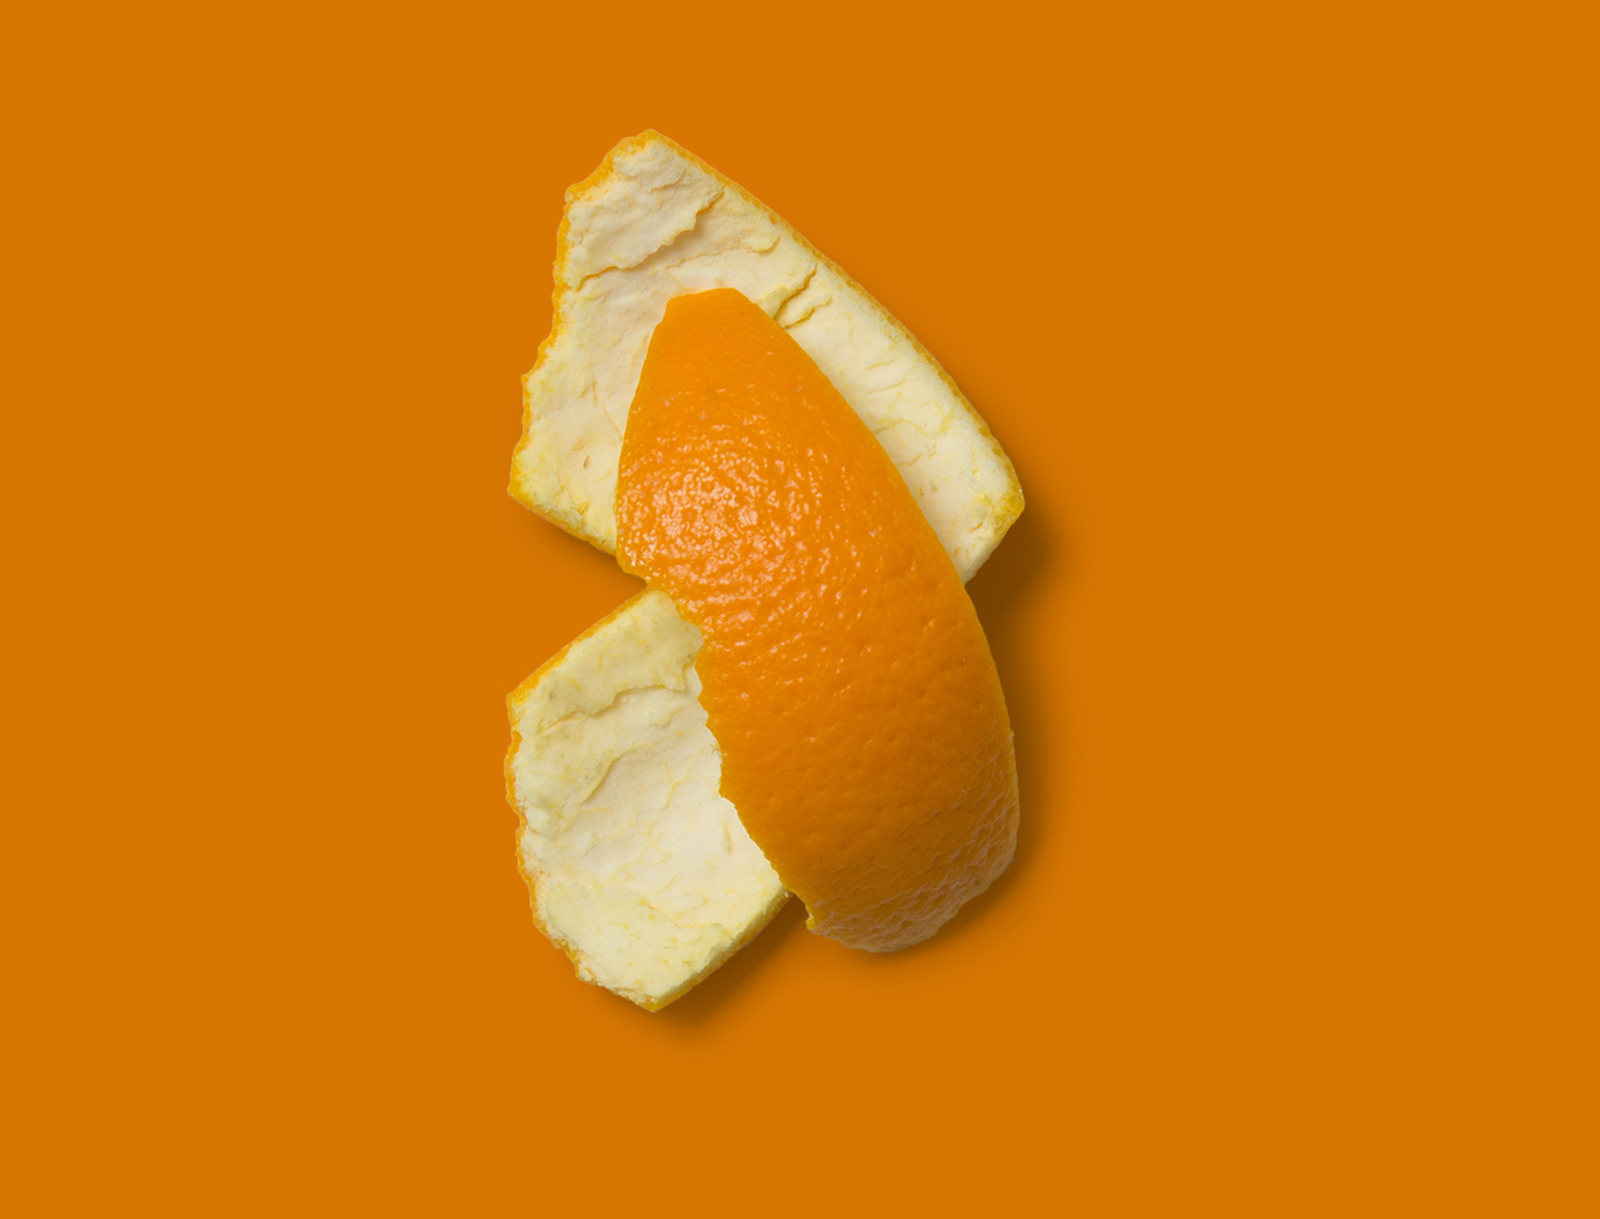 Σταματήστε να πετάτε φλούδες πορτοκαλιού: έχουν απίστευτες καλλυντικές και φαρμακευτικές ιδιότητες.  Όλα όσα δεν ξέρατε για αυτούς